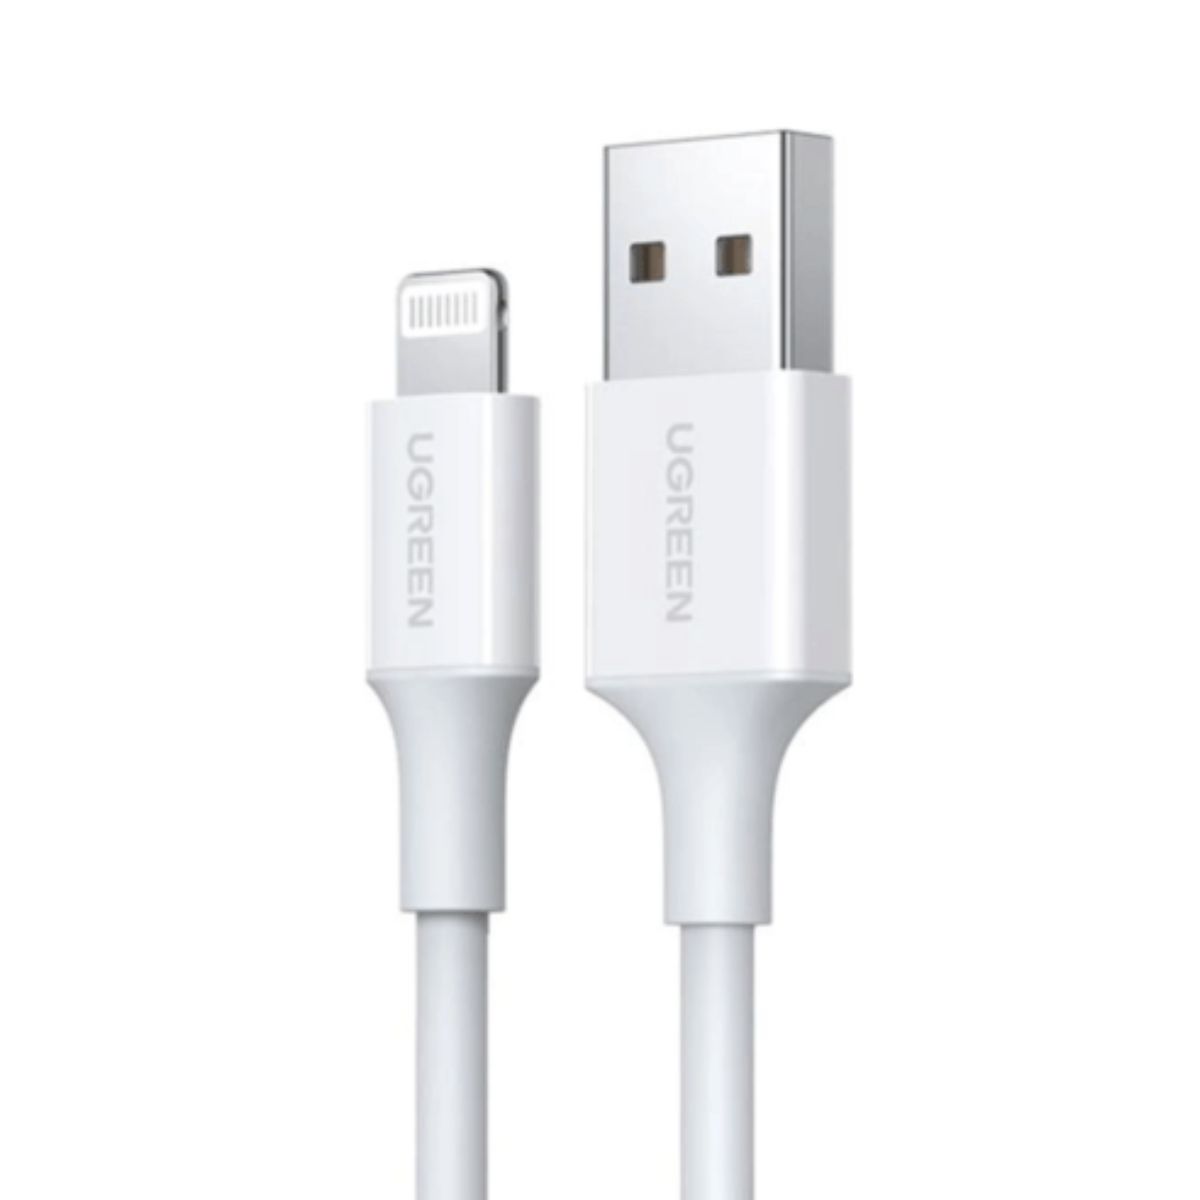 Cáp sạc dài 1.5m USB-A Male to Lightning Ugreen 80315 US155 màu trắng, mạ niken, vỏ ABS